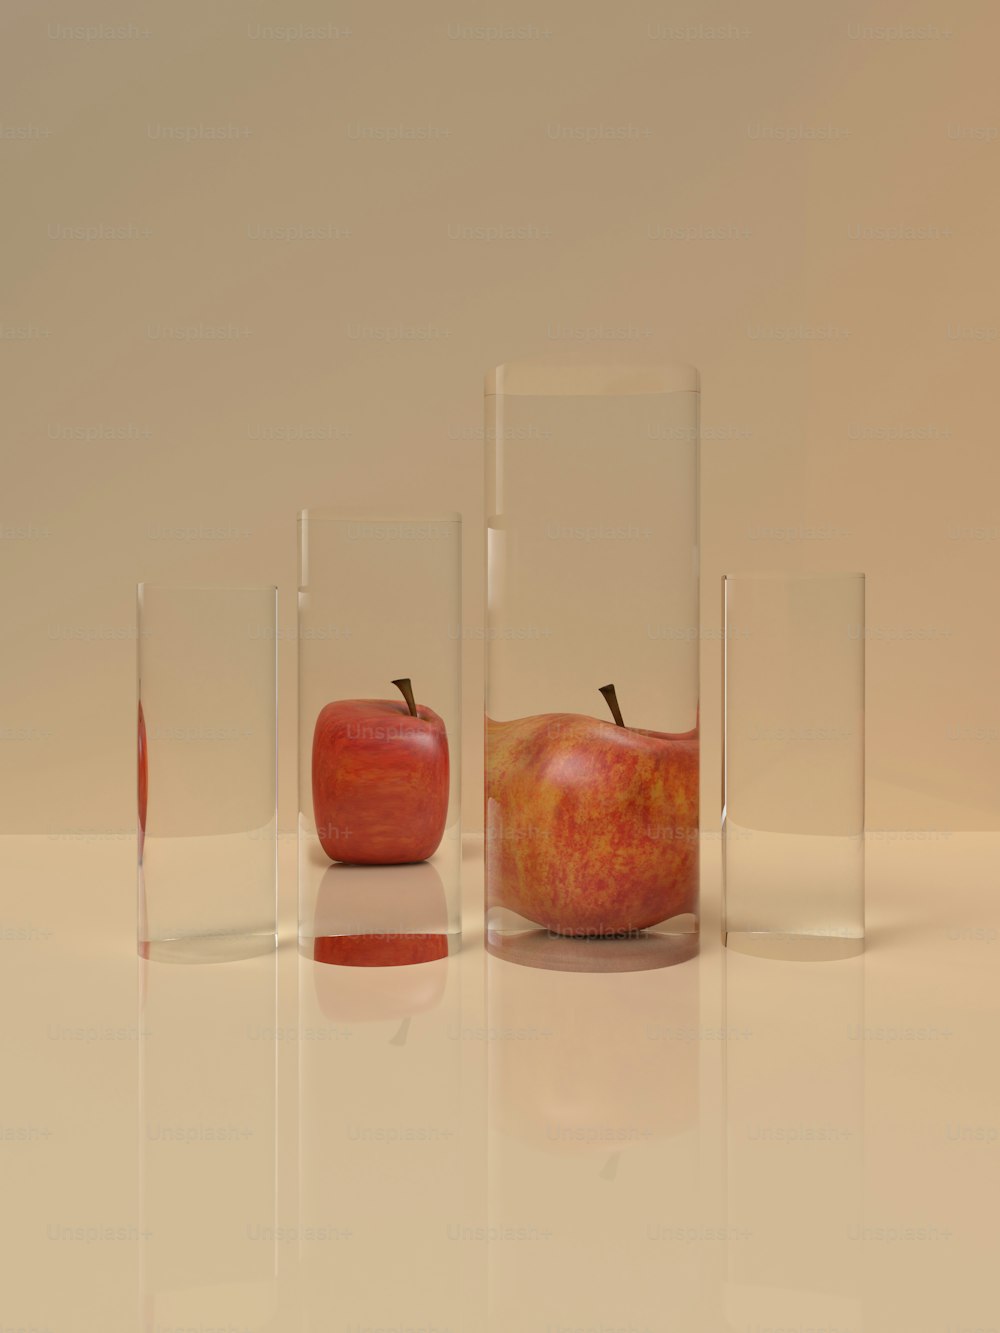 um grupo de três vasos de vidro com maçãs neles